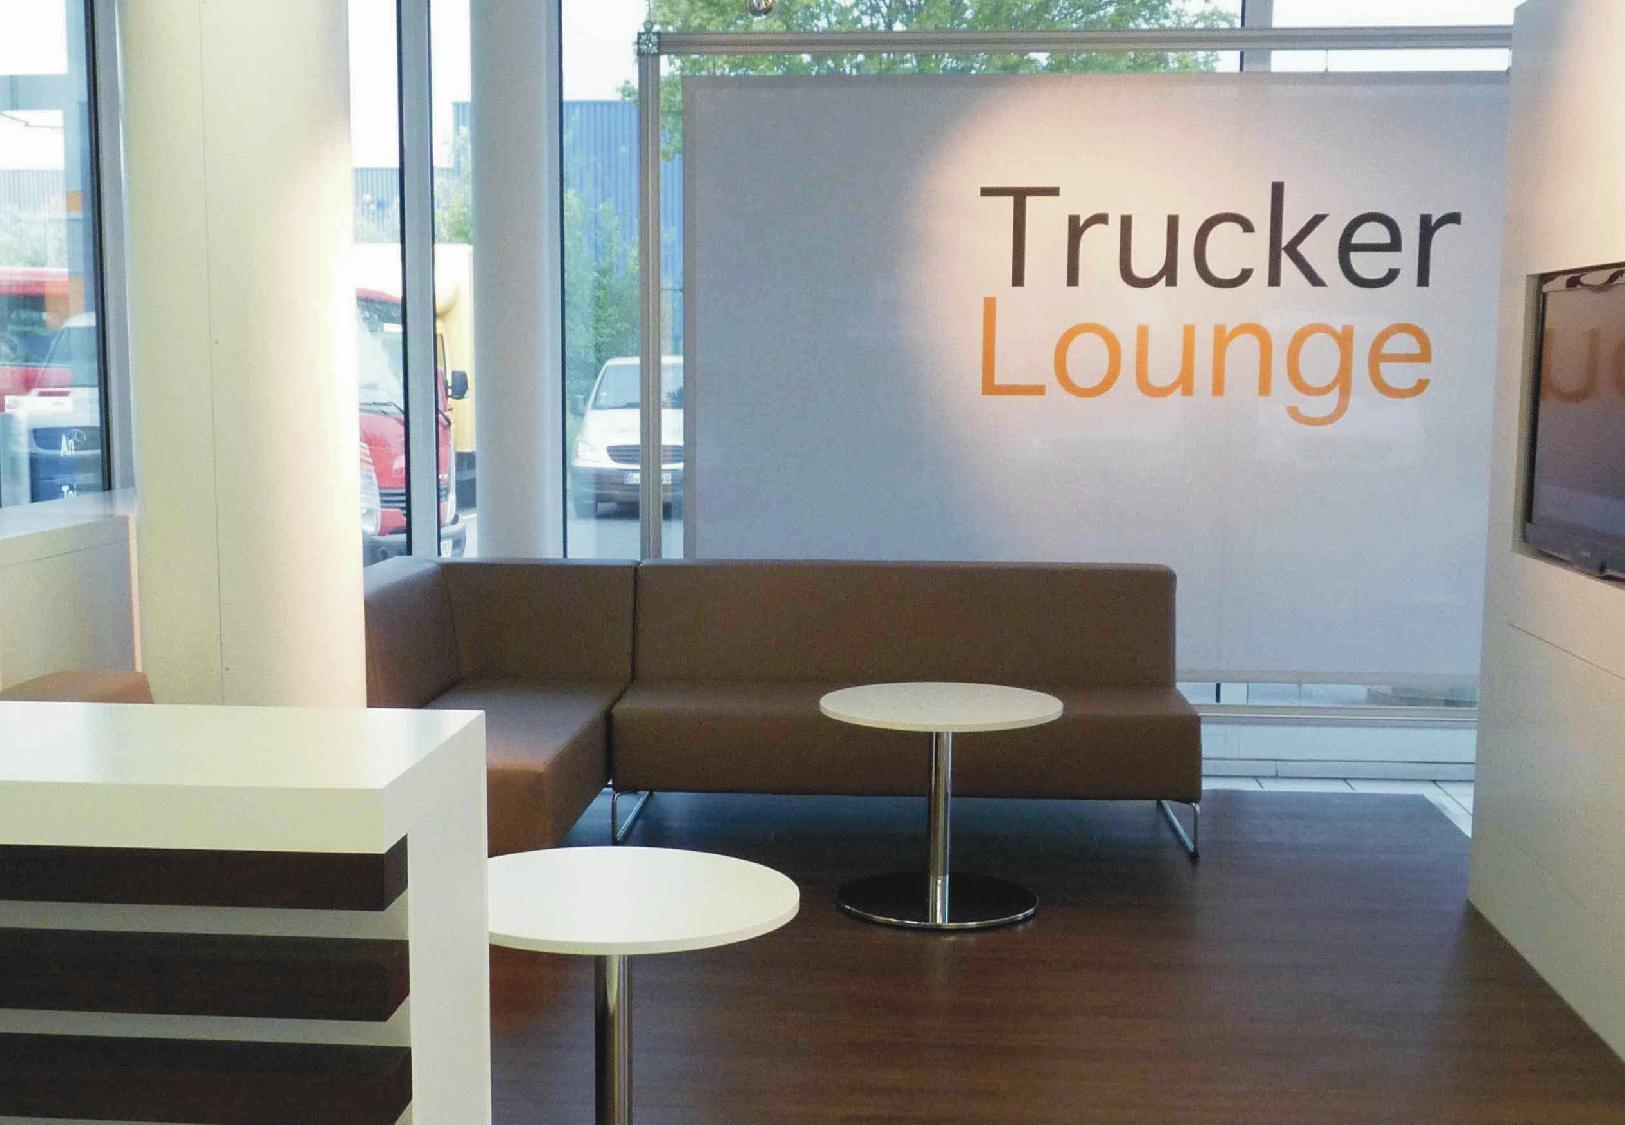 01_Trucker Lounge.jpg